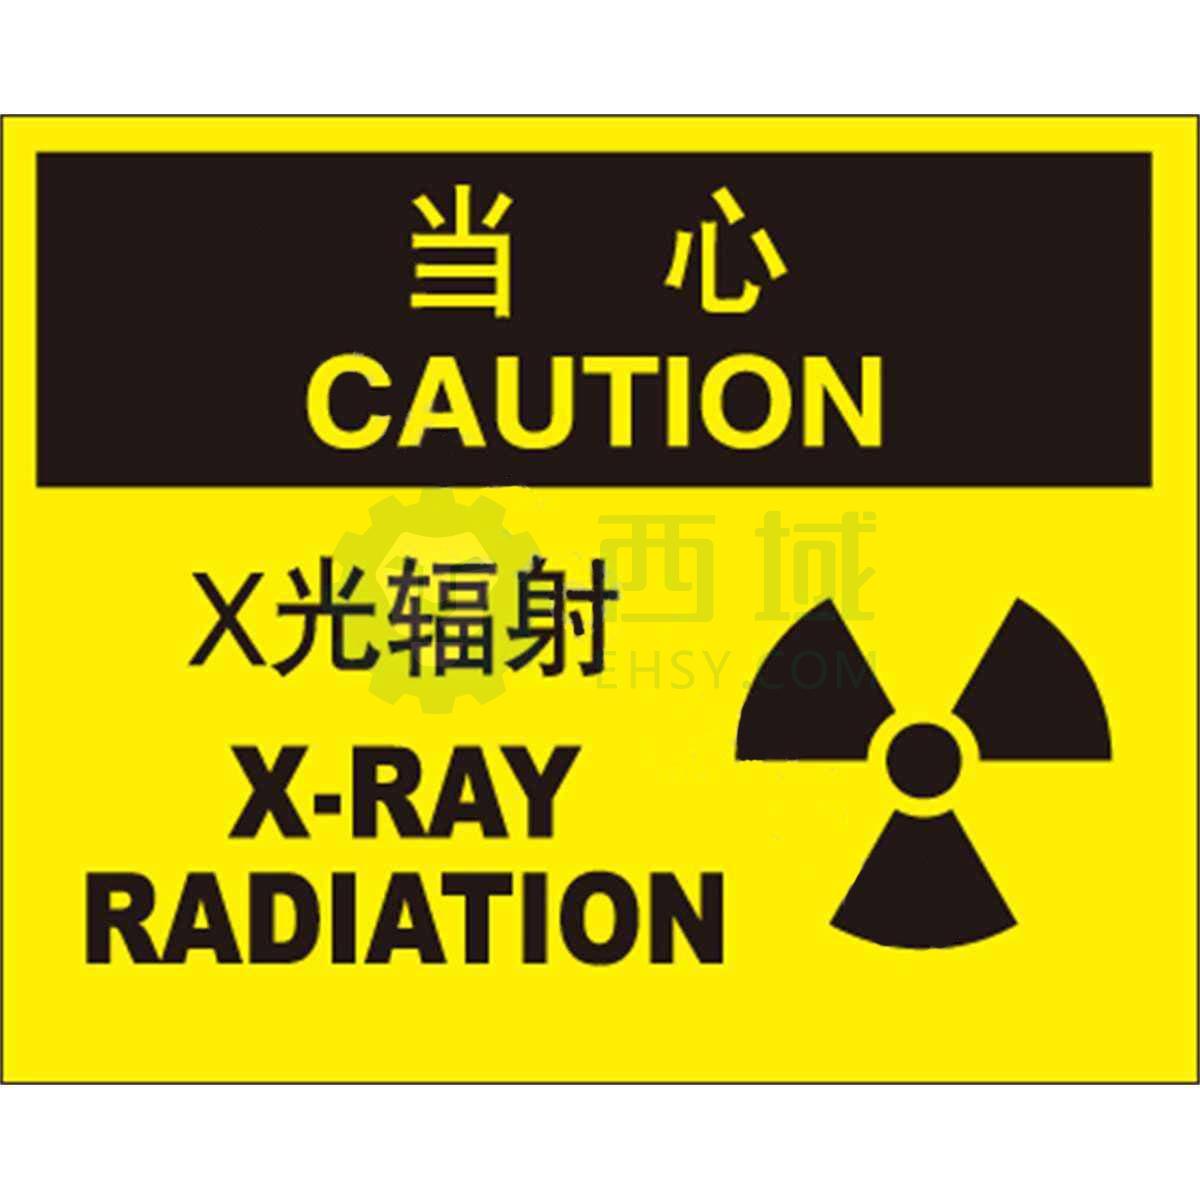 辐射标志图片及尺寸图片